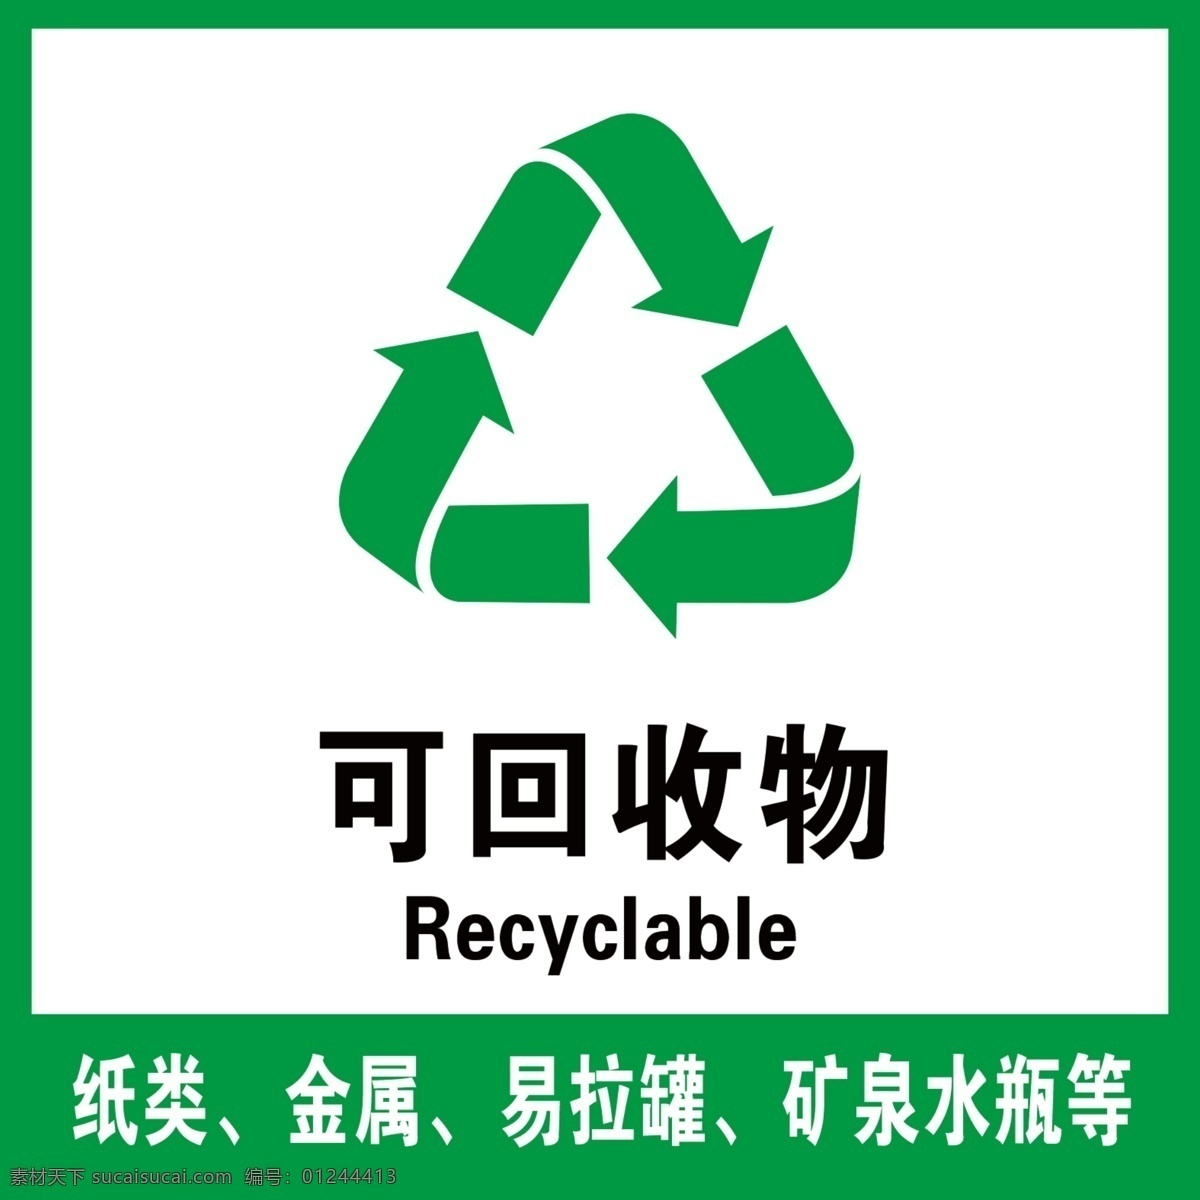 可回收物 可回收垃圾 垃圾分类 垃圾桶 垃圾